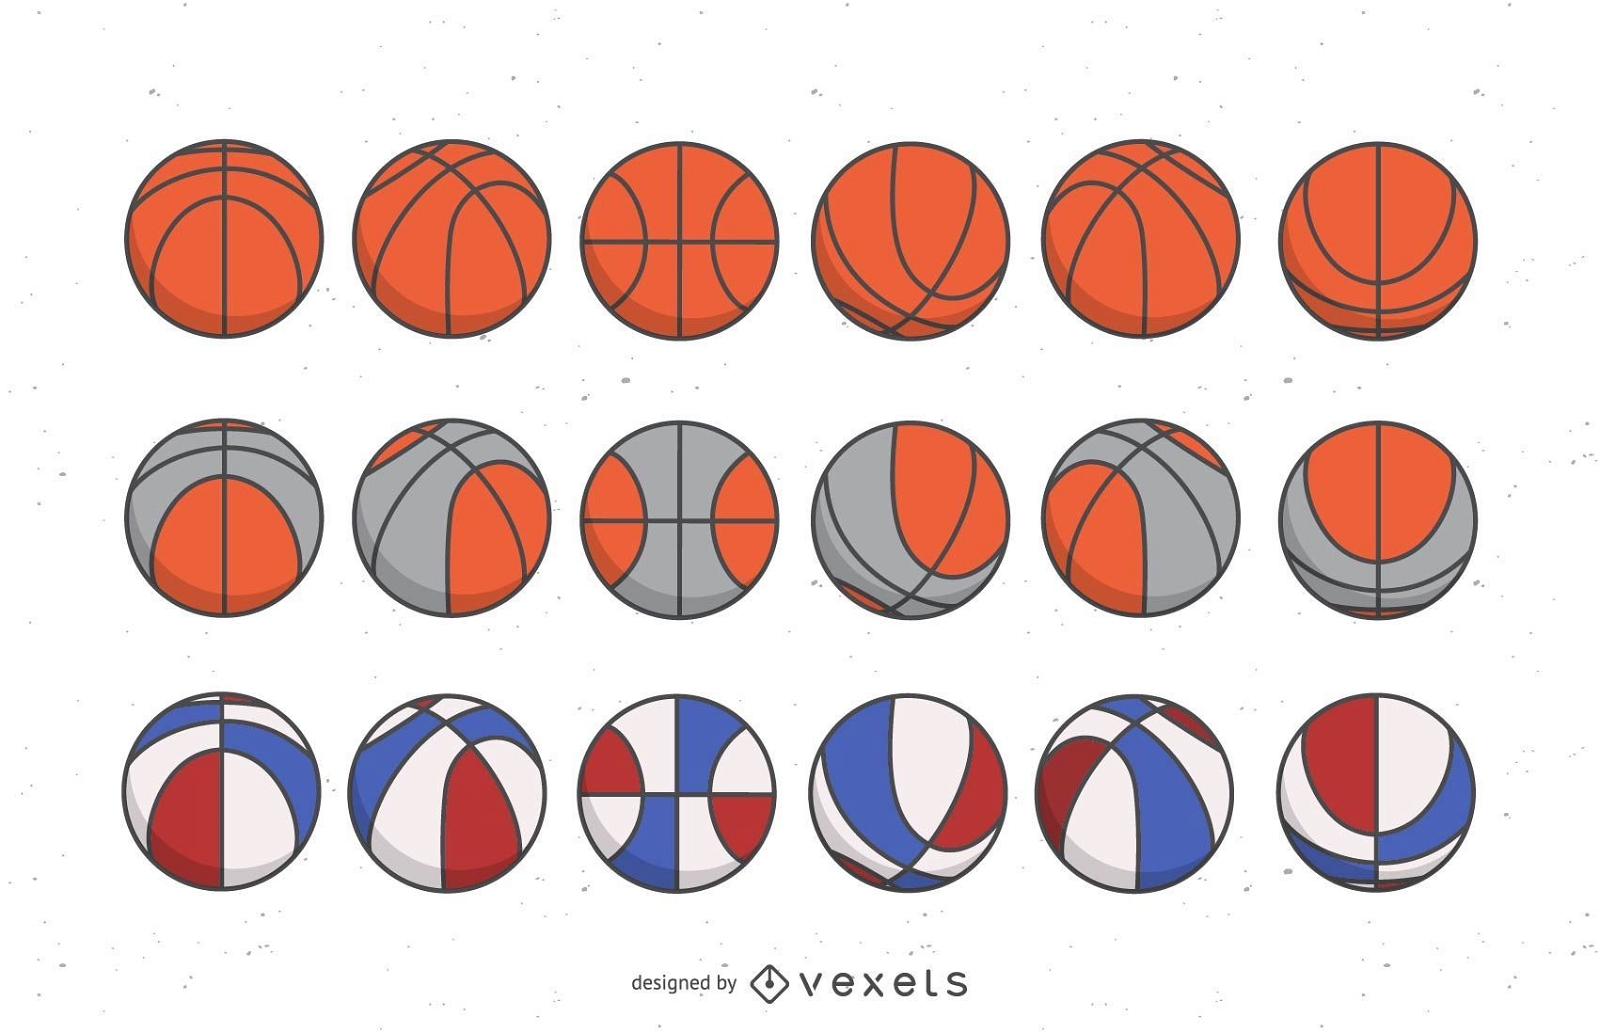 Juego de pelotas de baloncesto de colores